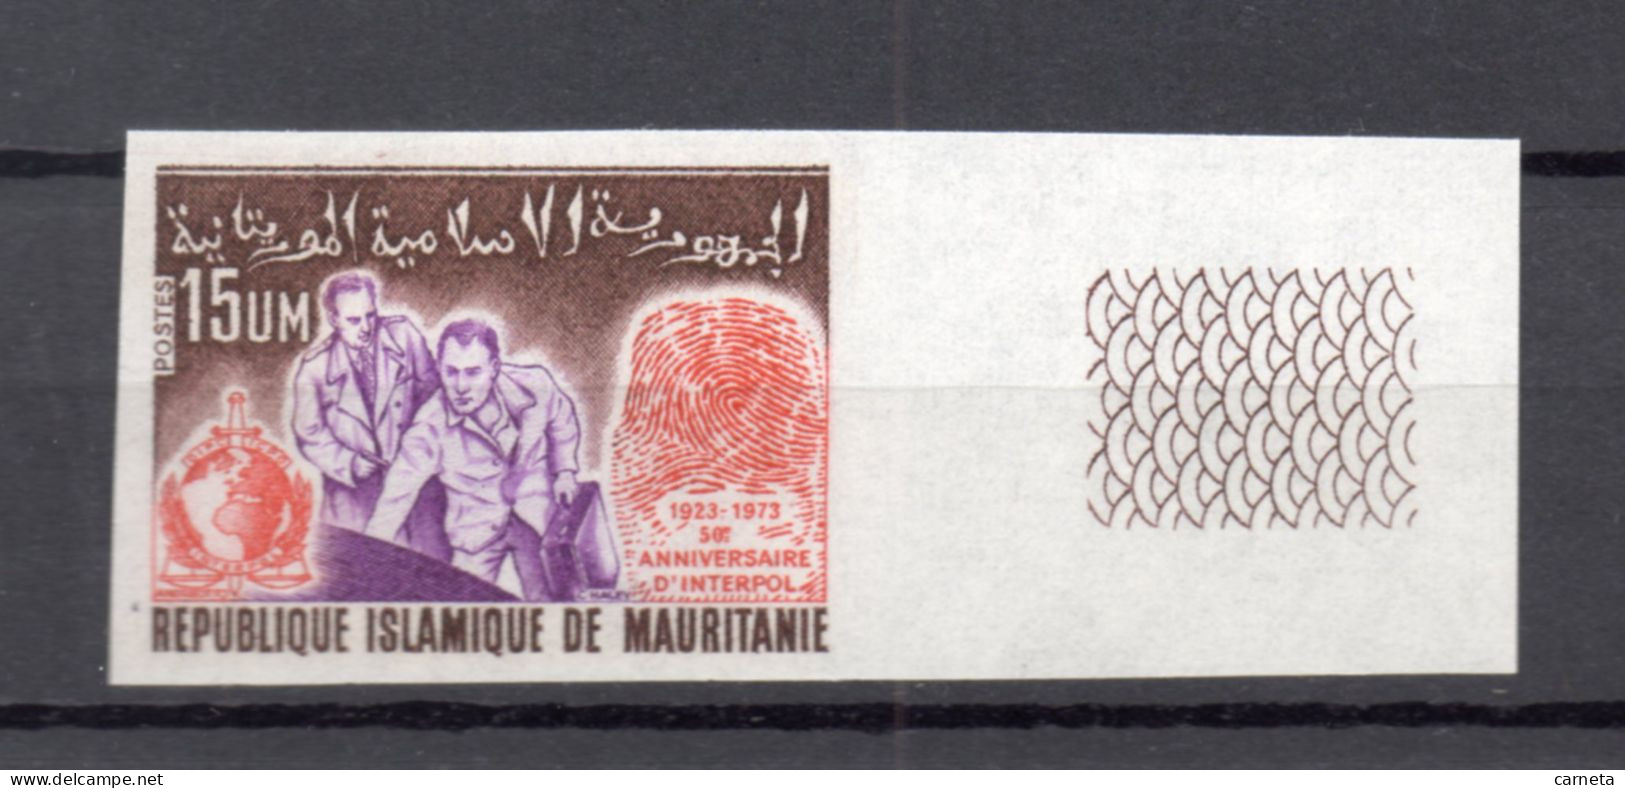 MAURITANIE    N° 310  NON DENTELE    NEUF SANS CHARNIERE   COTE ? €    INTERPOL - Mauritania (1960-...)